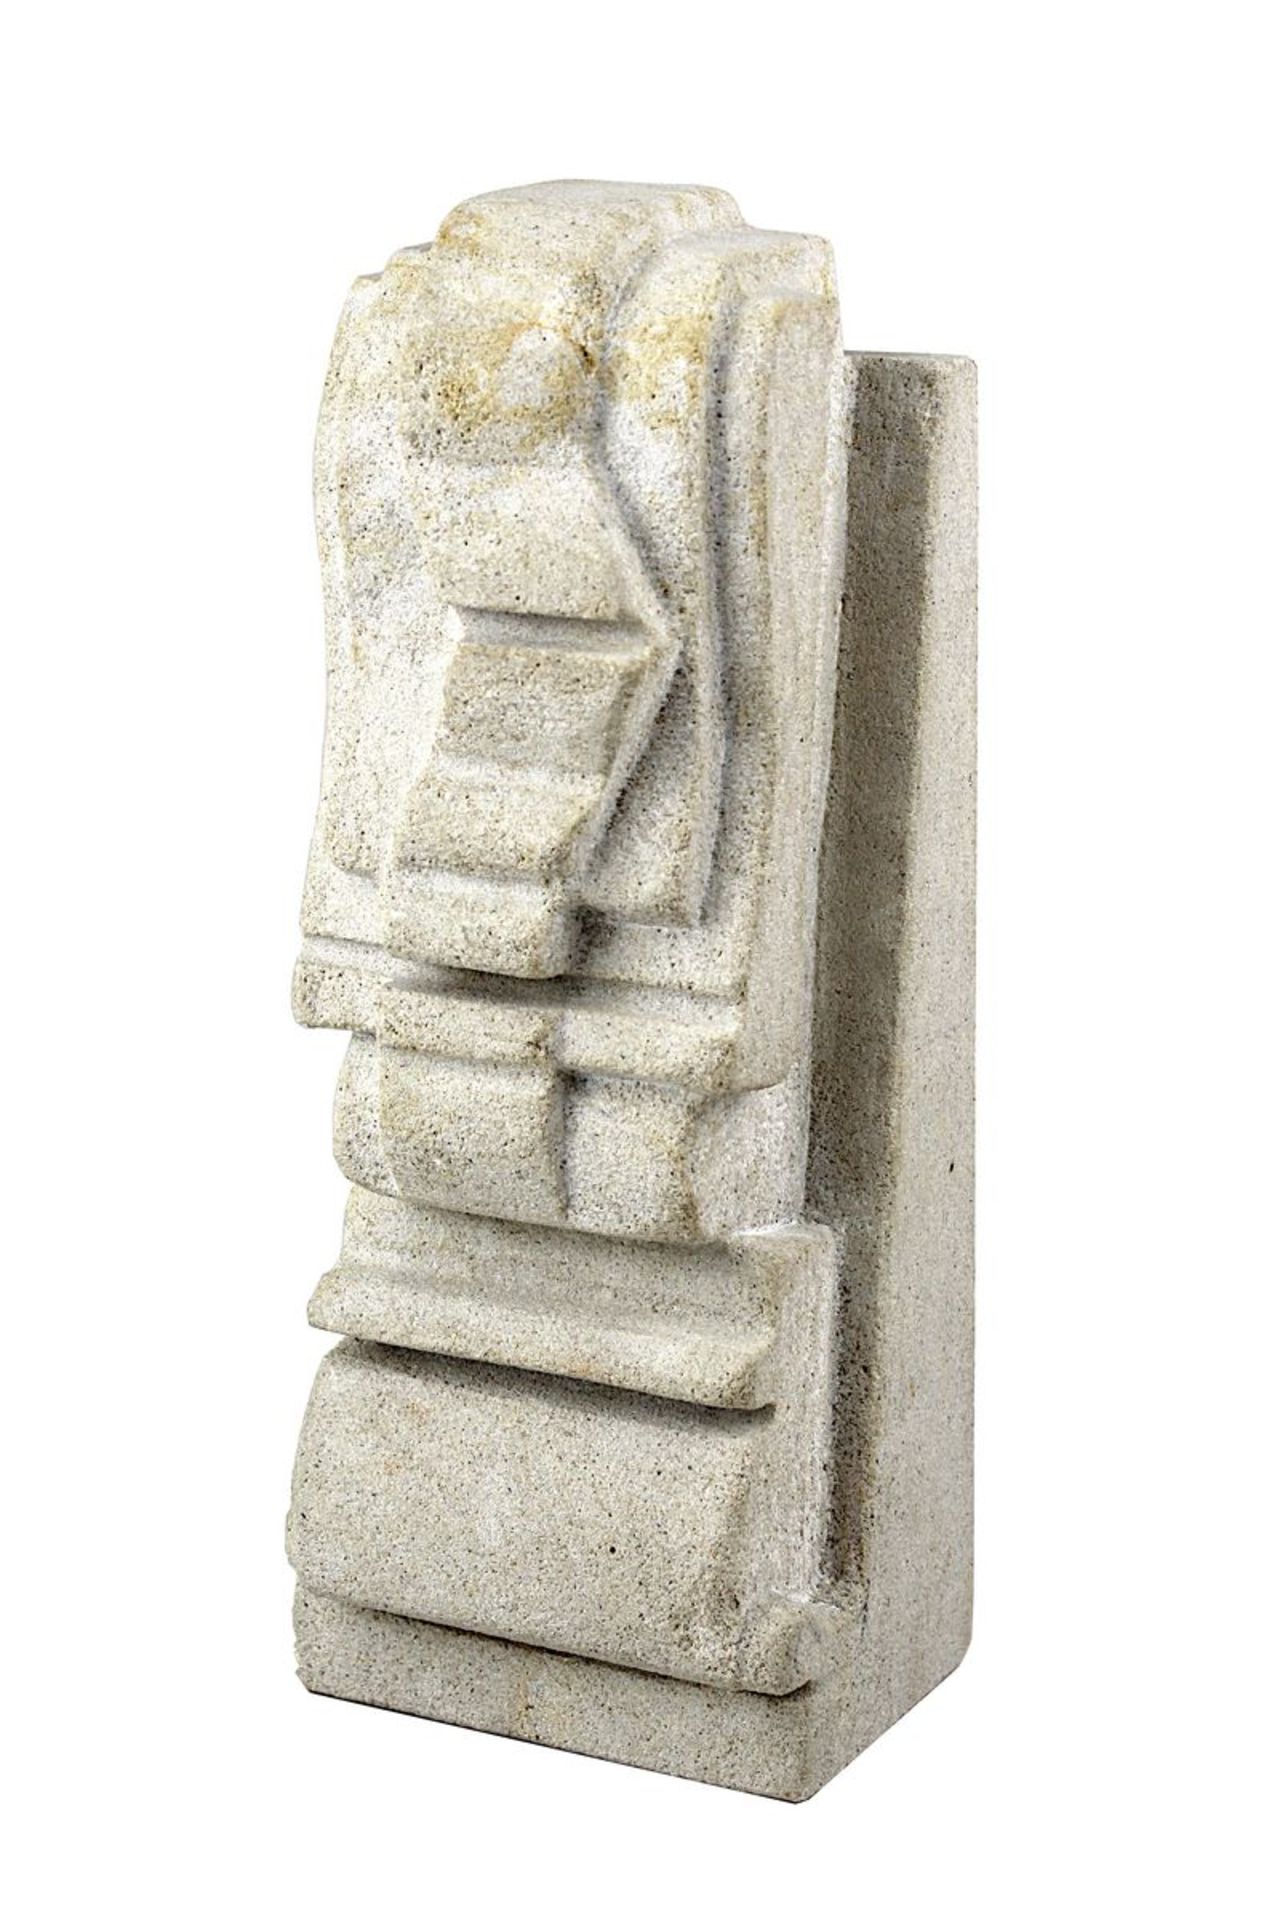 Künstler 2. Hälfte 20. Jh., Ohne Titel Skulptur aus Sandstein, Höhe 17,8 cm, Tiefe 5,5 cm. 1447-